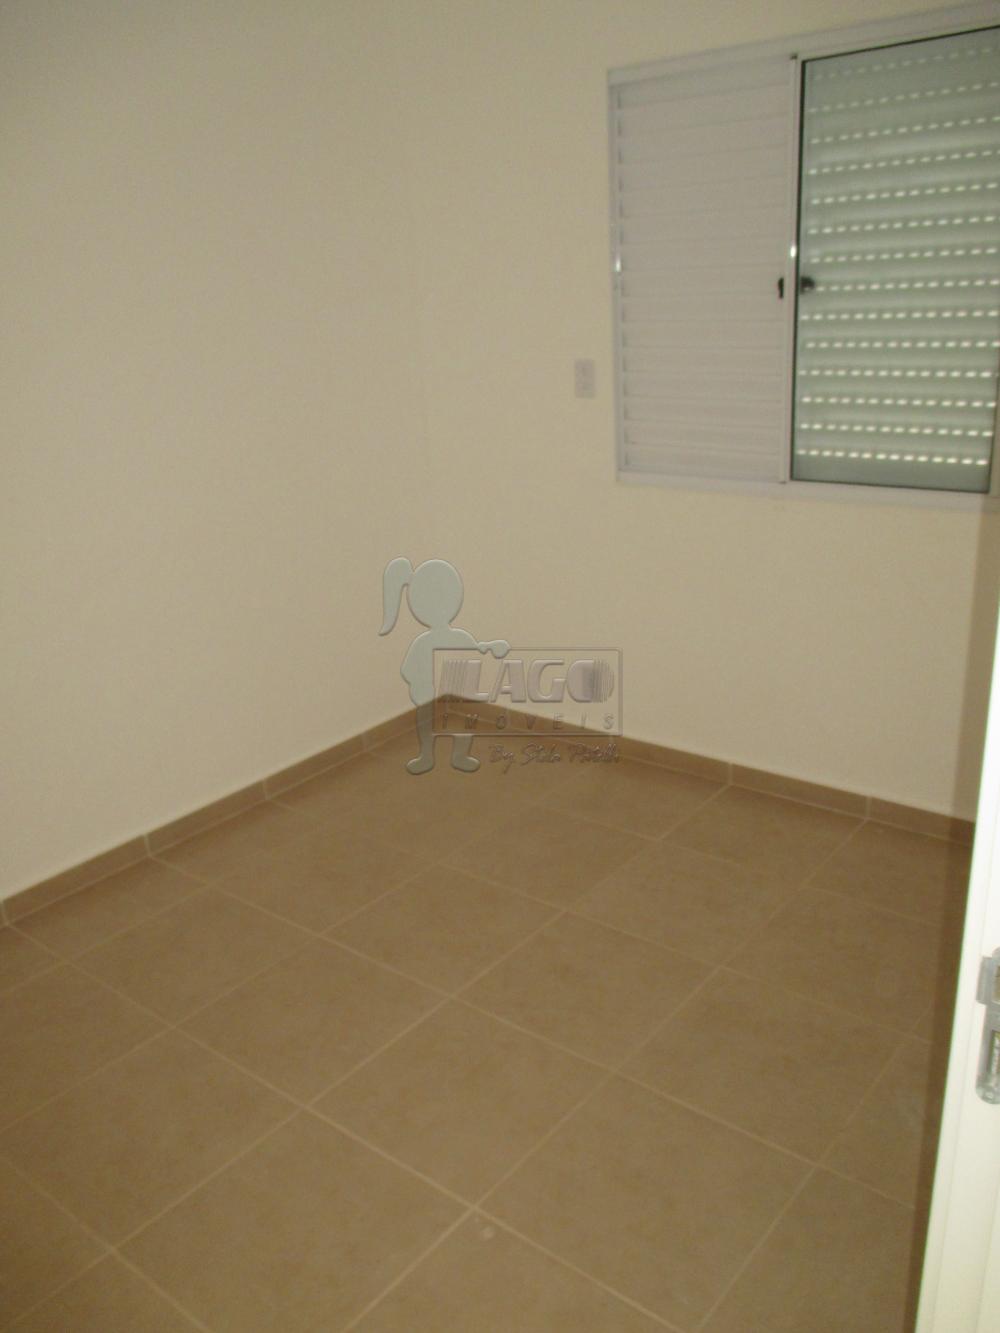 Alugar Apartamentos / Padrão em Ribeirão Preto R$ 650,00 - Foto 4